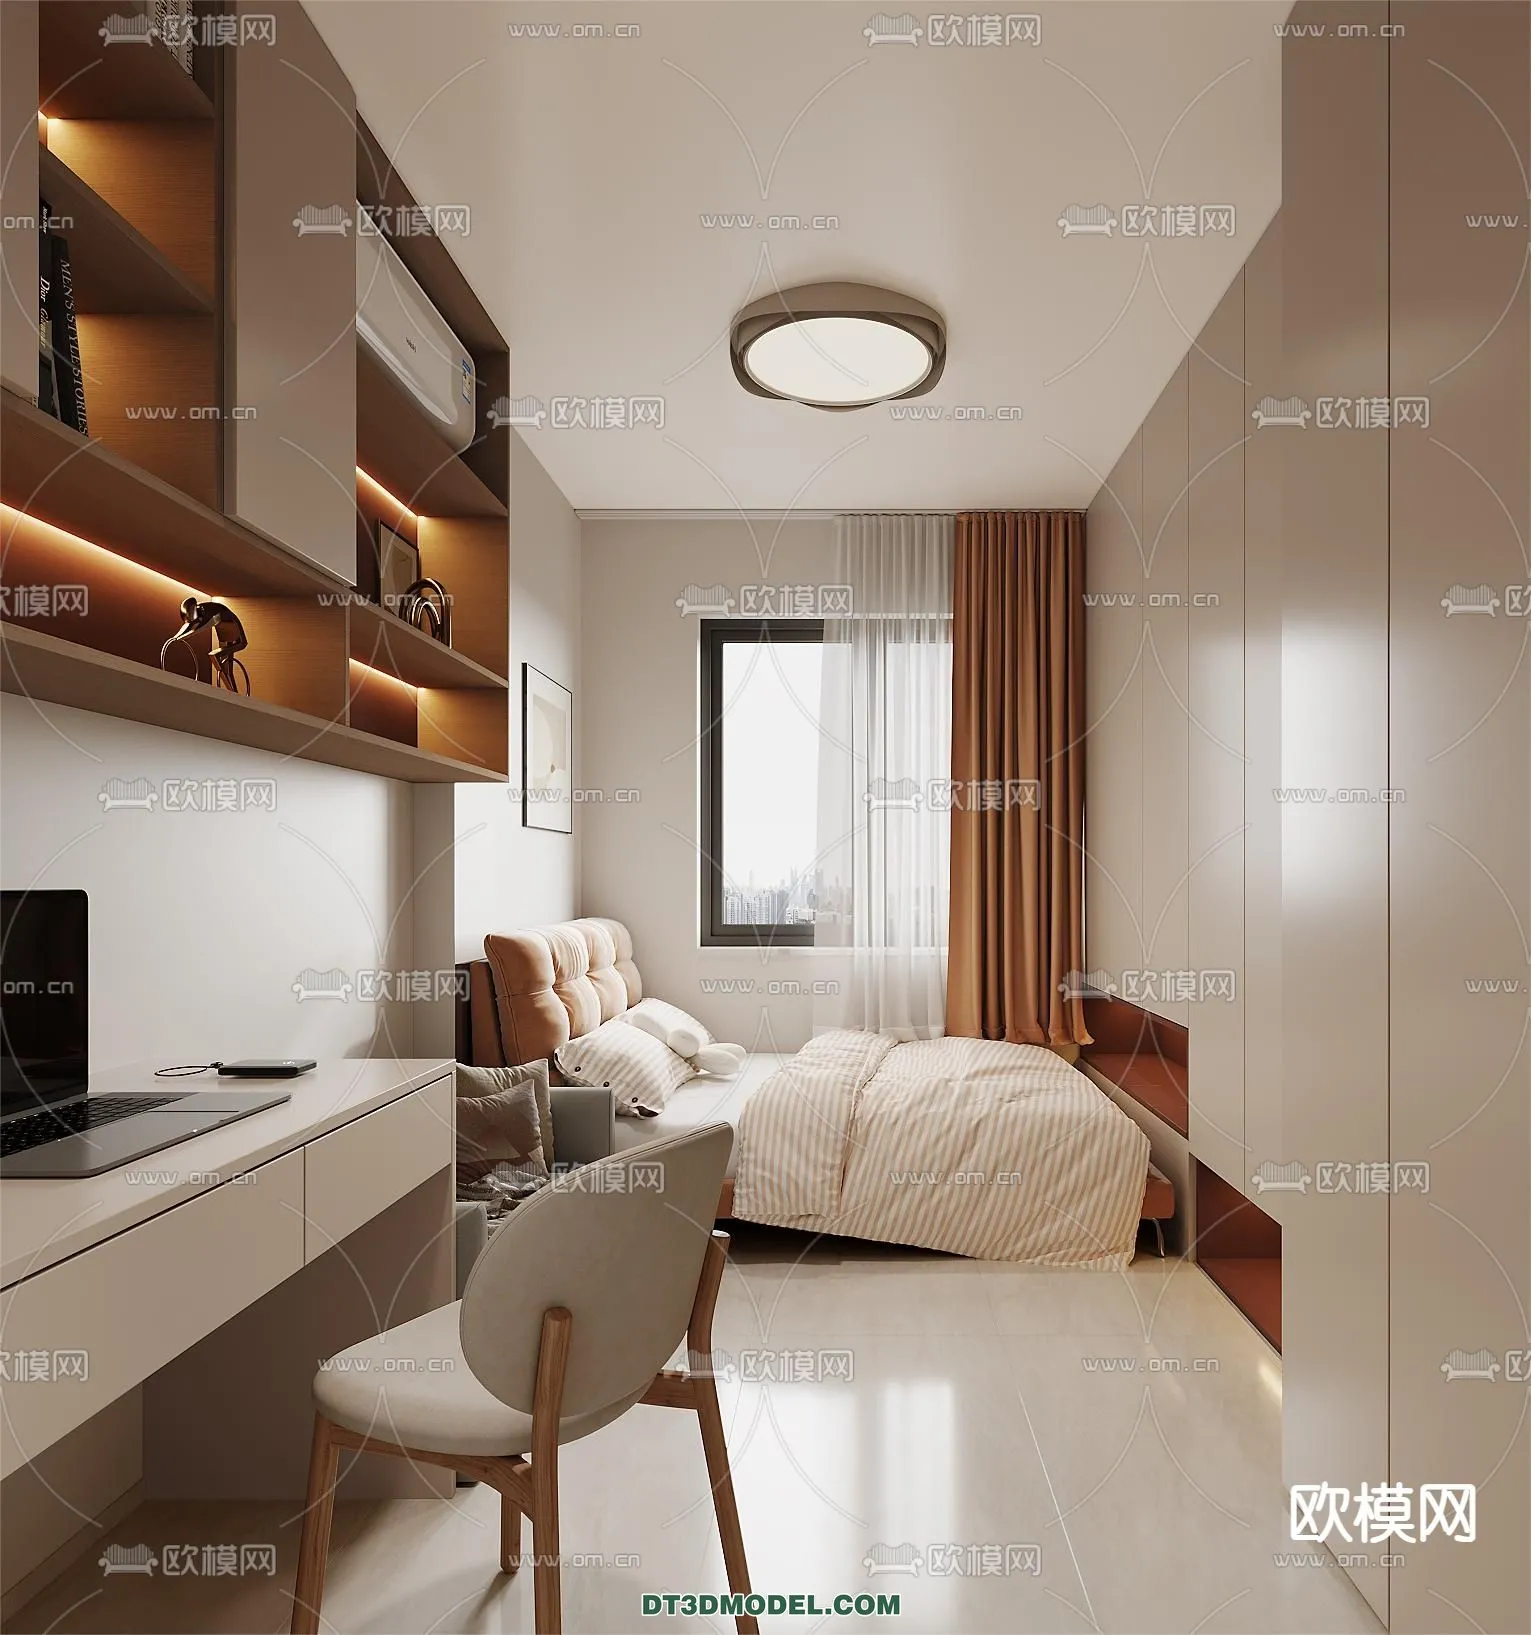 Tatami Bedroom – Japan Bedroom – 3D Scene – 067